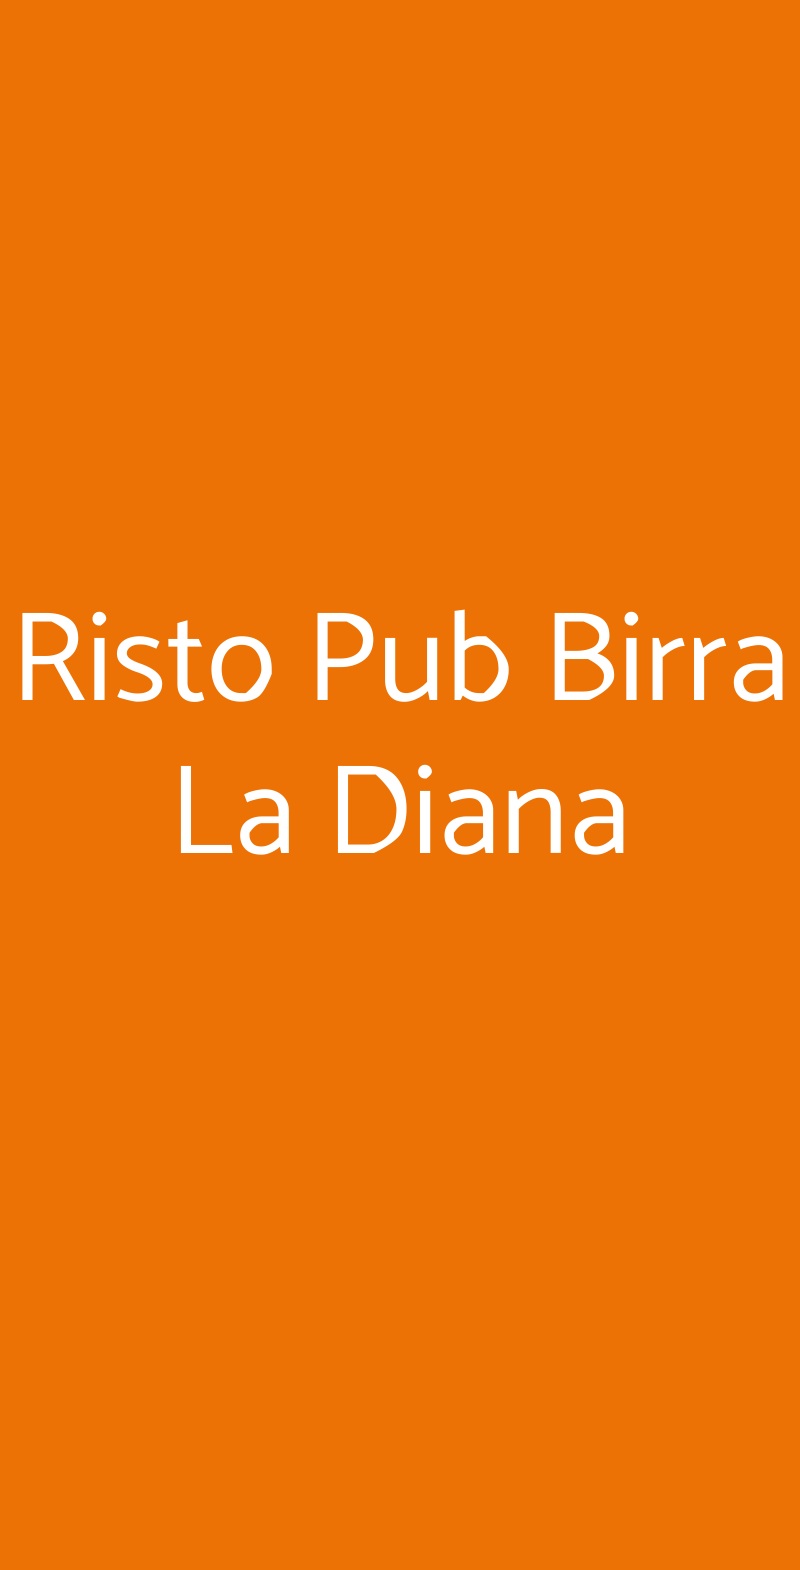 Risto Pub Birra La Diana Siena menù 1 pagina